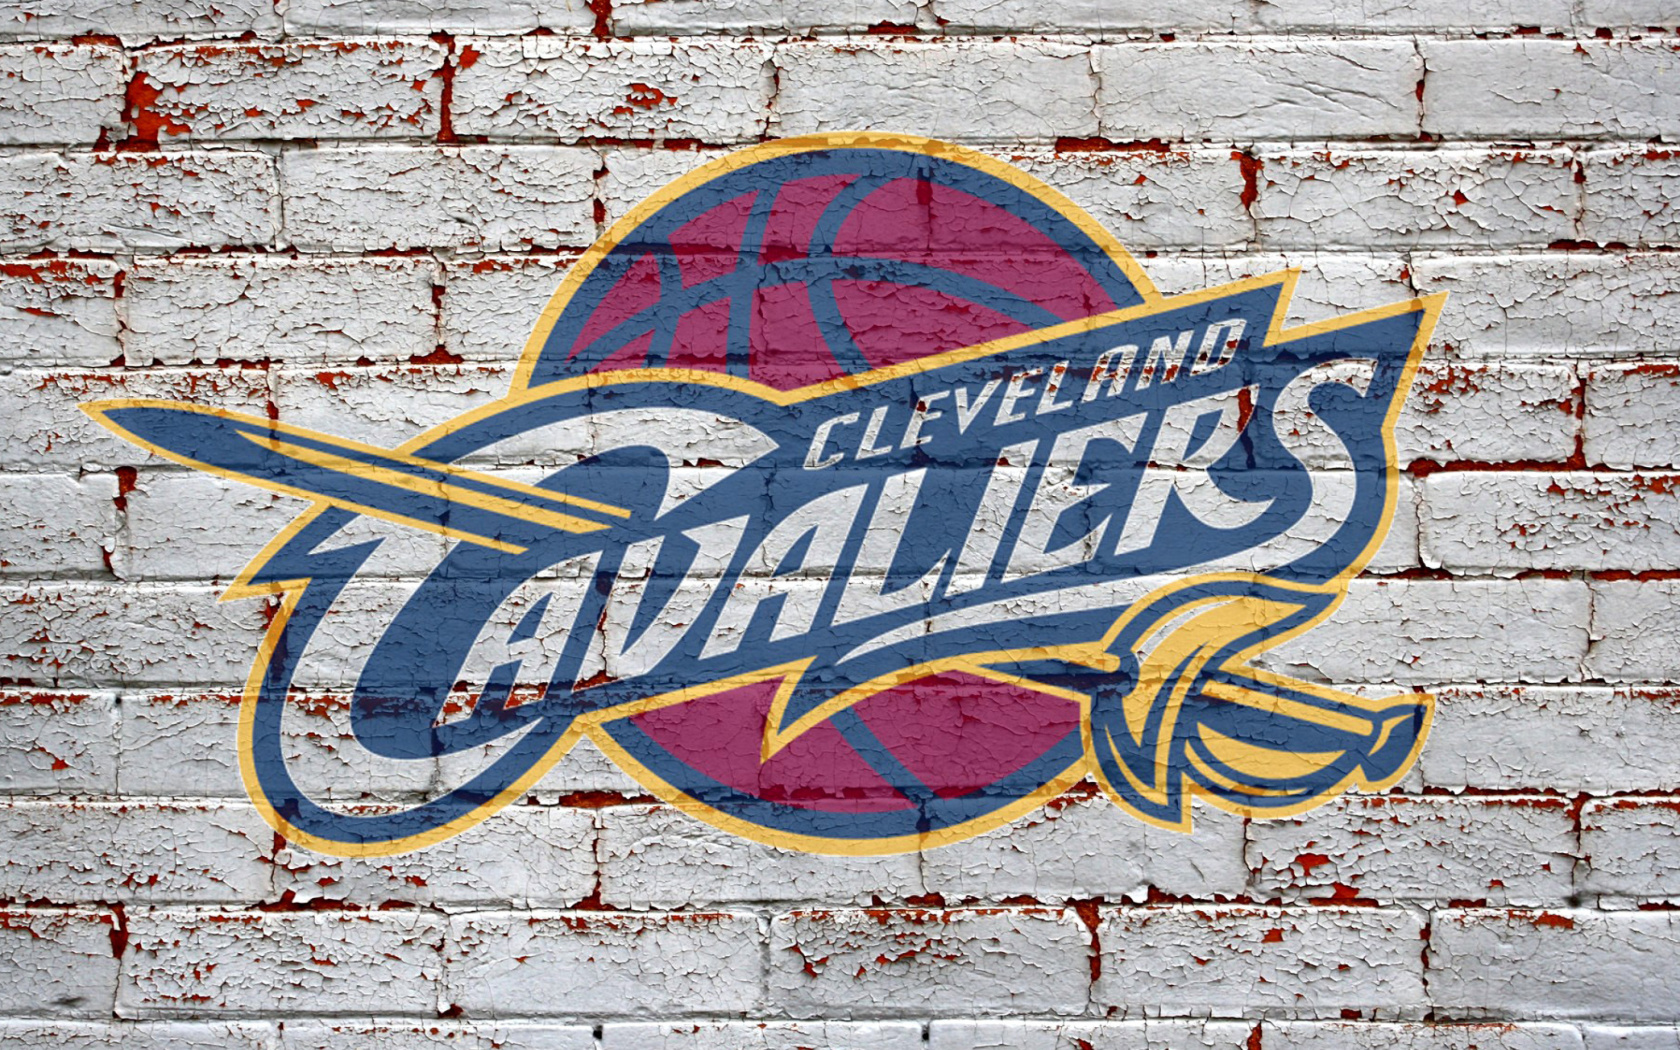 Cleveland Cavaliers NBA Basketball Team wallpaper 1680x1050